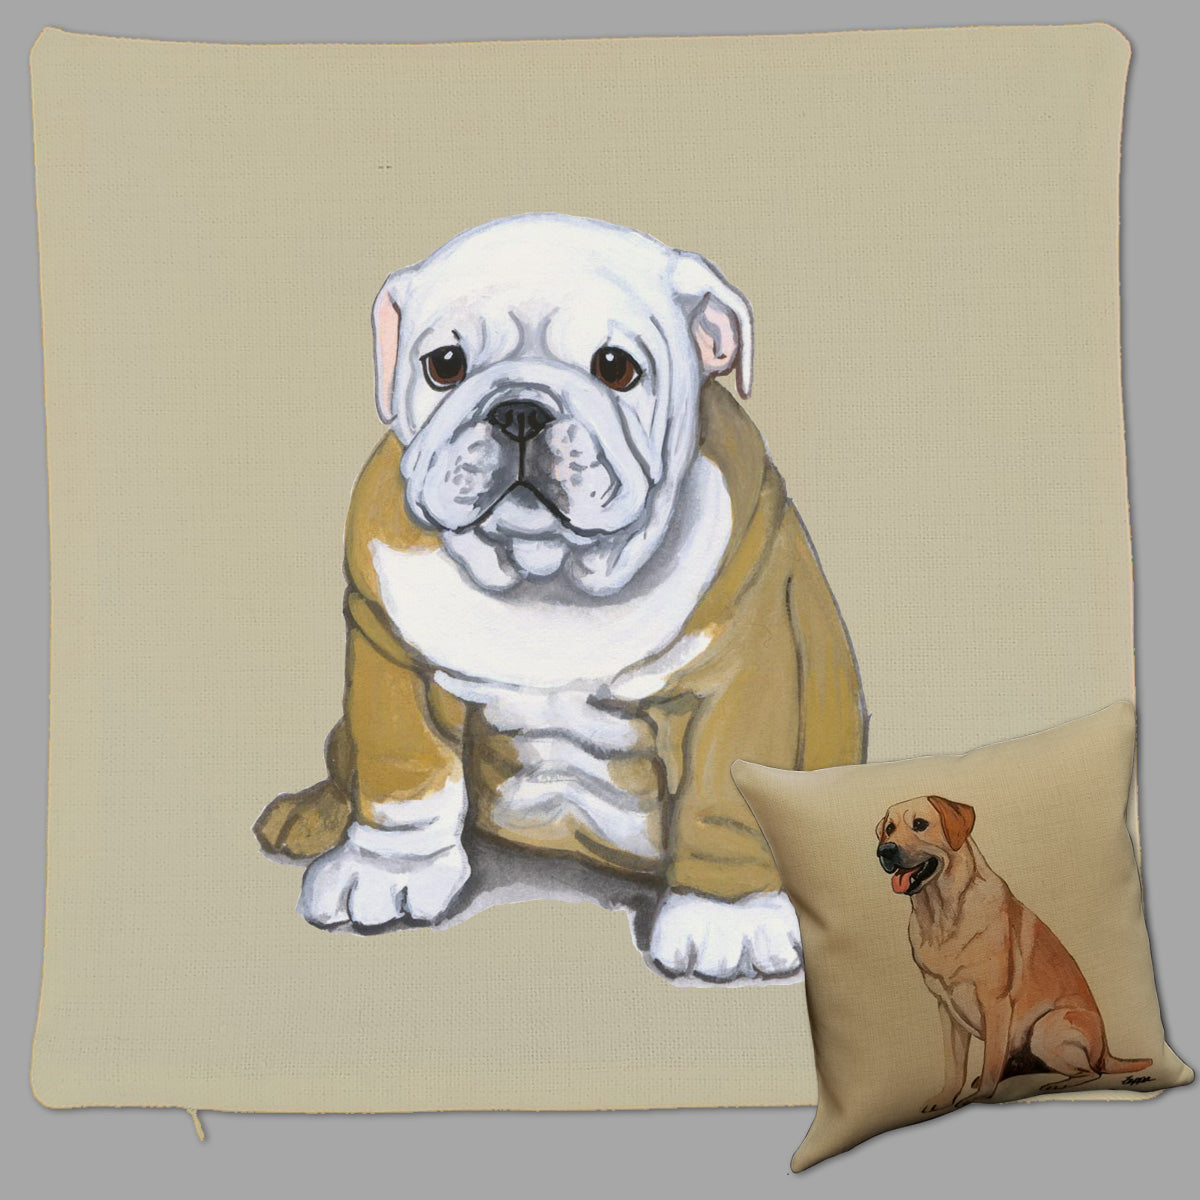 Bulldog Throw Pillow